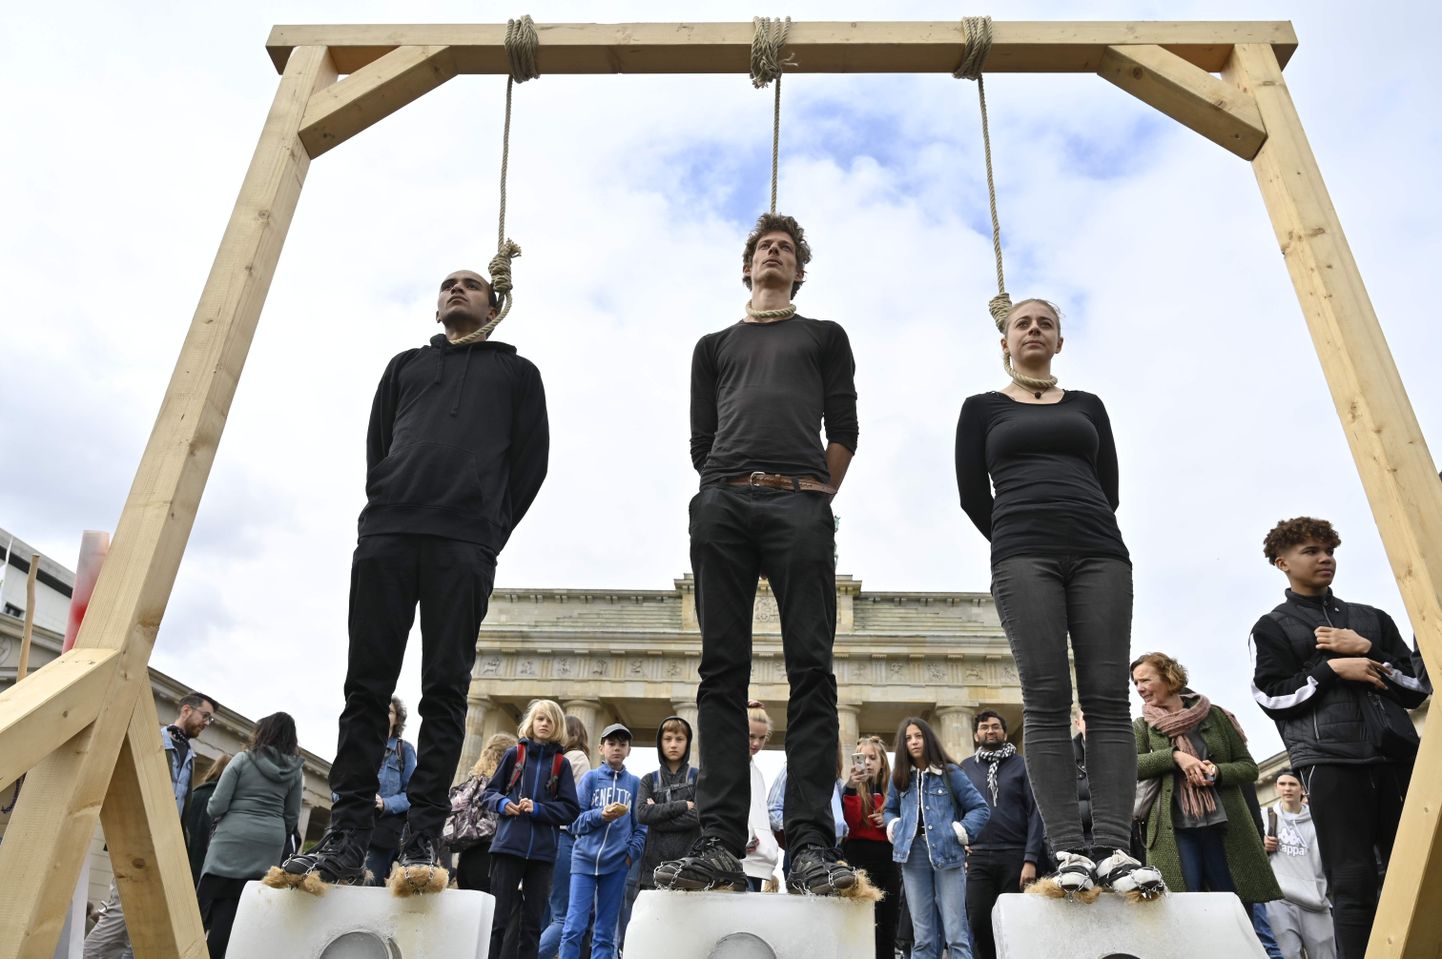 Протестующие стоят на глыбах льда под виселицей во время демонстрации «Пятницы ради будущего» у Бранденбургских ворот в Берлине, 20 сентября 2019 года в рамках глобального дня действий по борьбе с изменением климата.